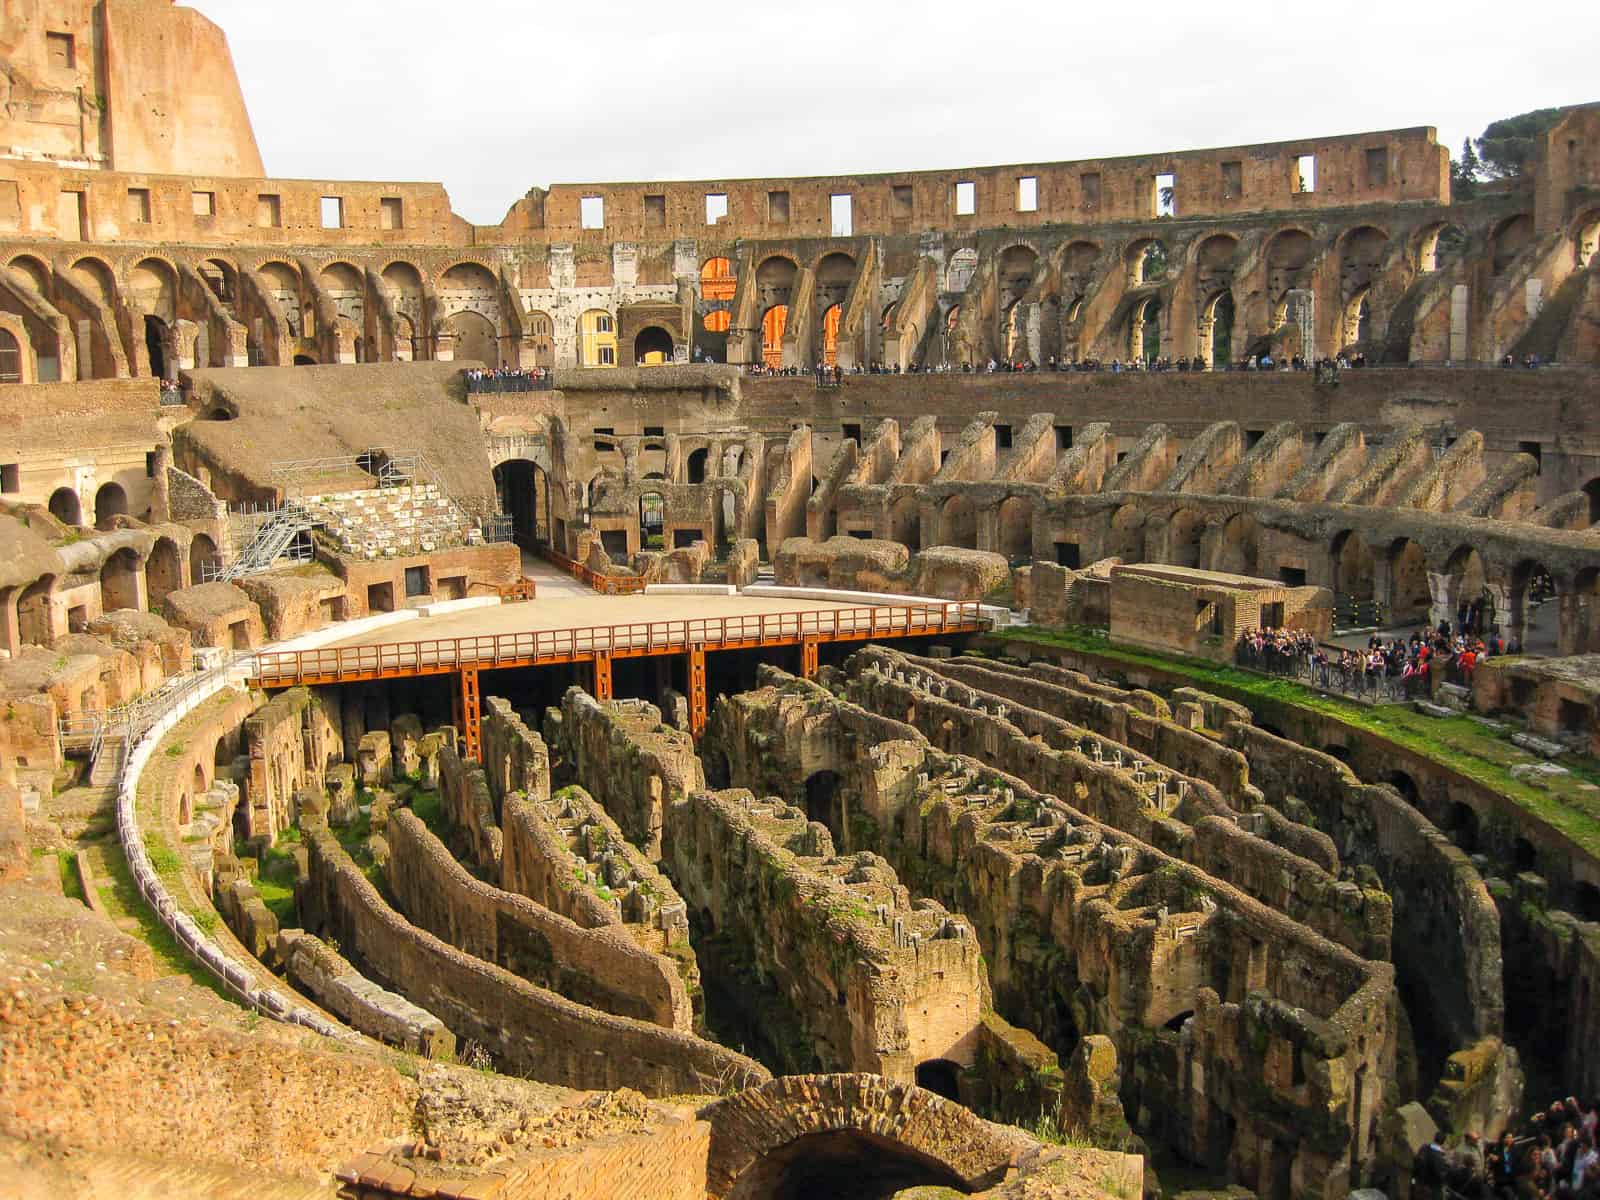 interior colosseum - ultimate Rome travel guide